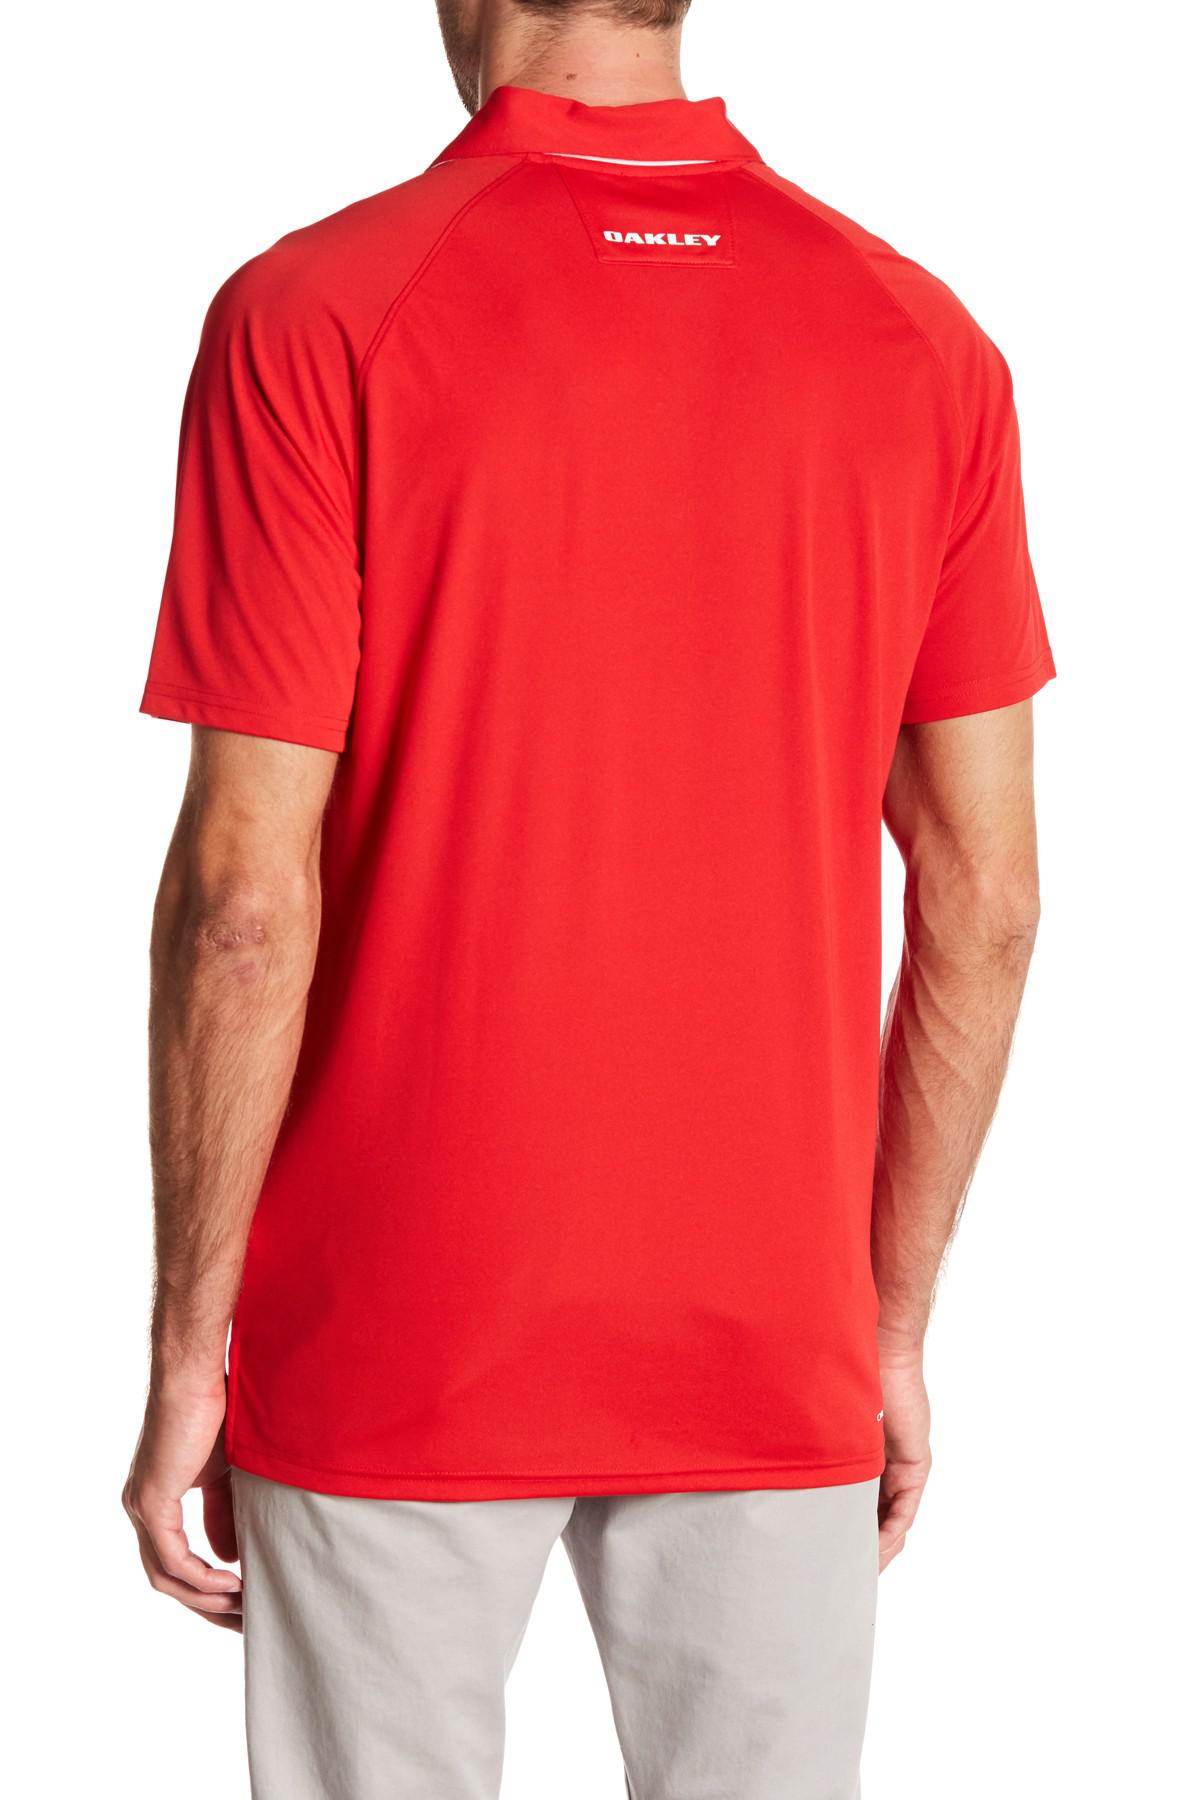 Lyst - Oakley Elemental Polo Shirt in Red for Men